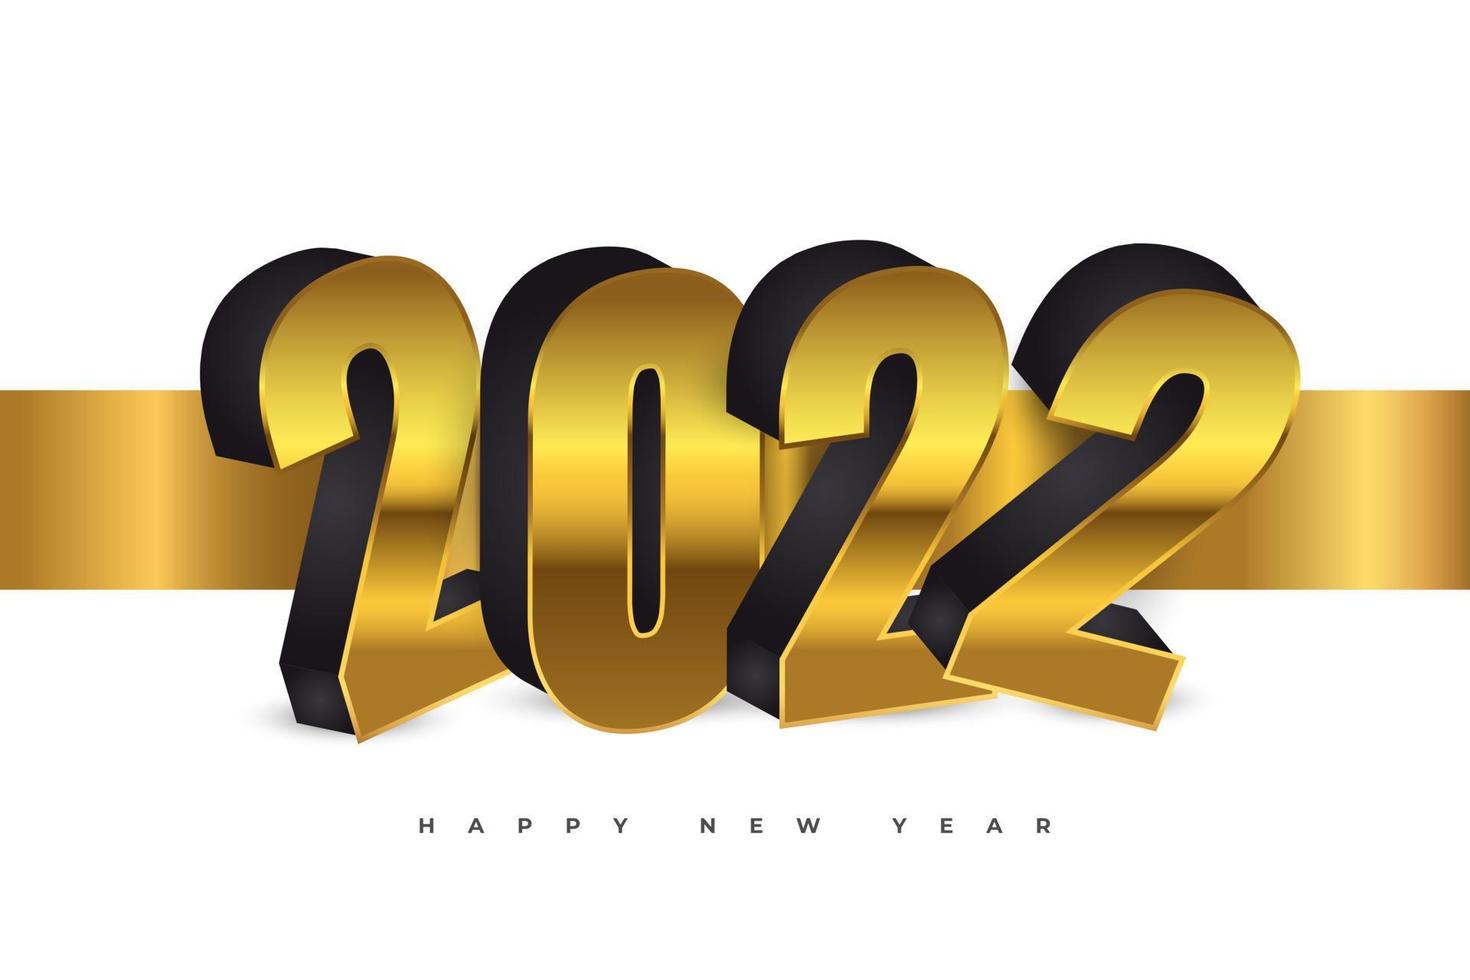 felice anno nuovo 2022 banner o poster design con numeri di lusso 3d in stile nero e oro. modello di progettazione per la celebrazione del nuovo anno per volantini, poster, brochure, biglietti, striscioni o cartoline vettore